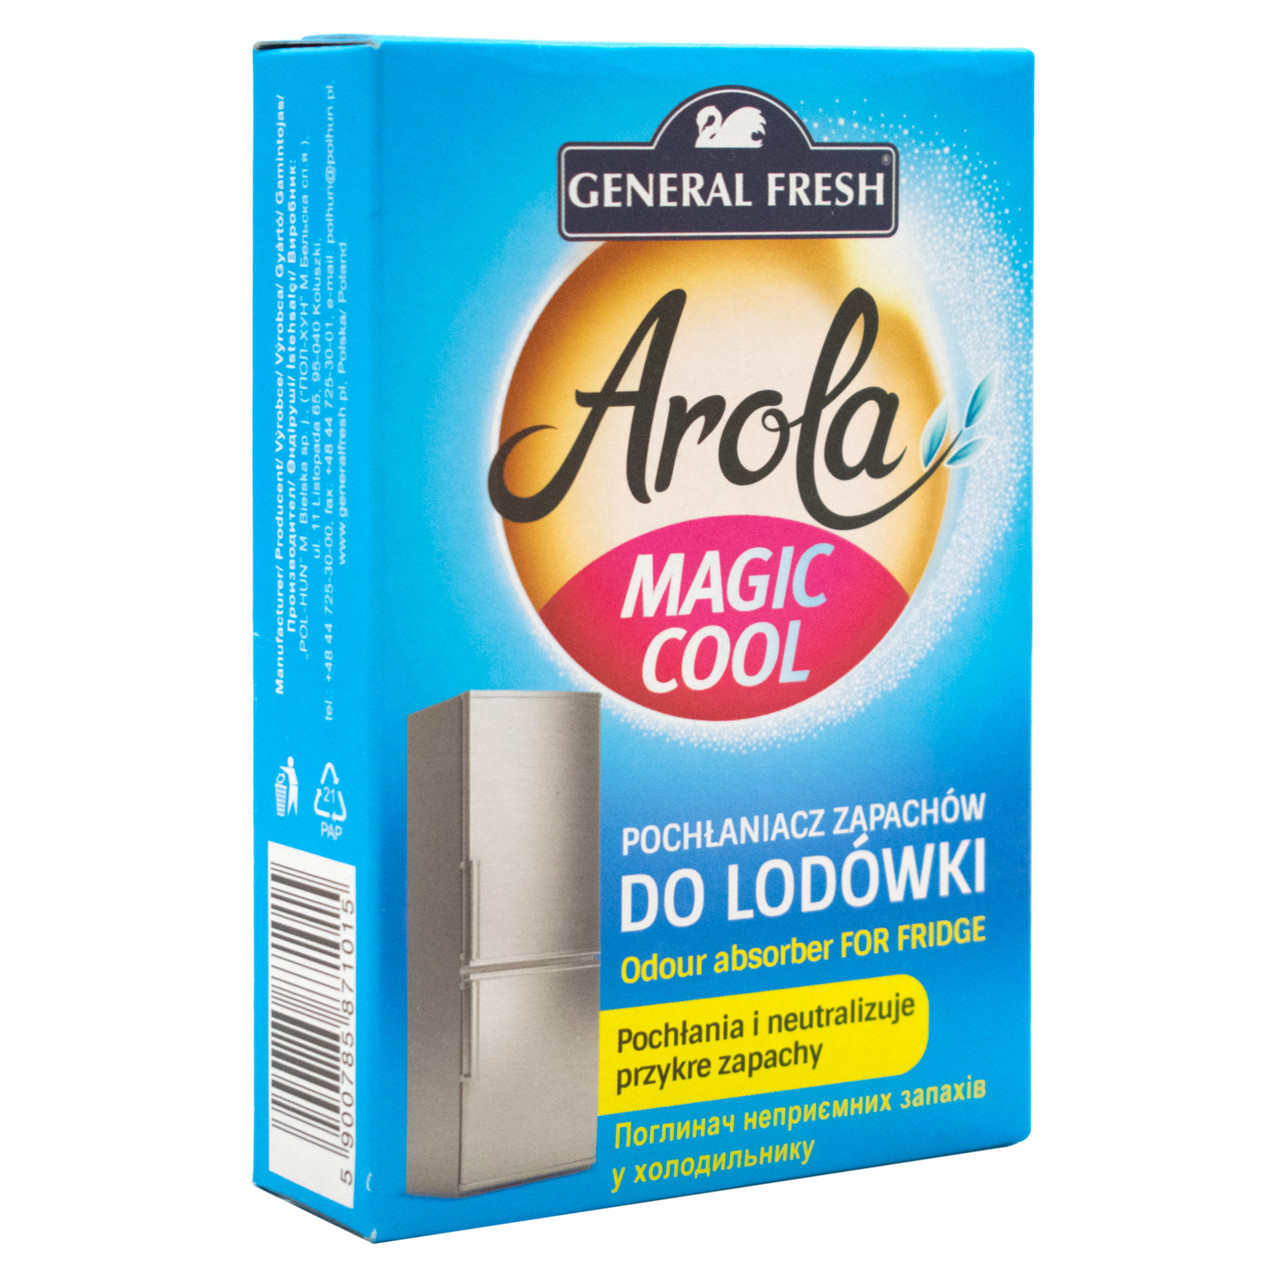  неприятного запаха в холодильнике Arola magic cool -  .